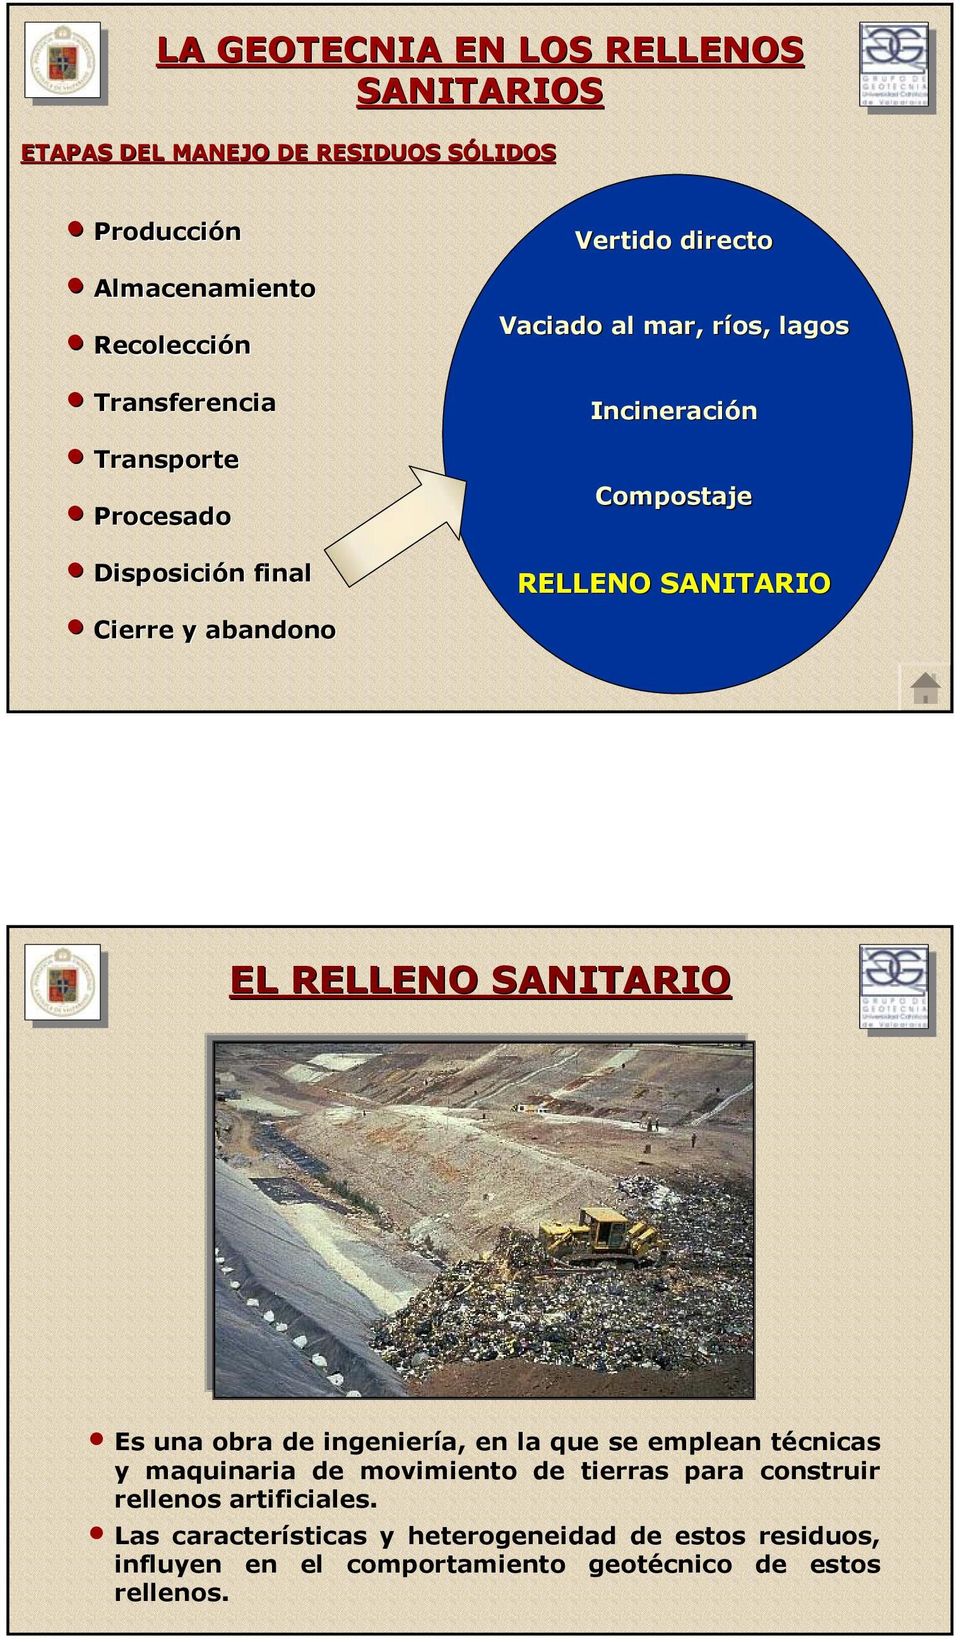 SANITARIO EL RELLENO SANITARIO Es una obra de ingeniería, en la que se emplean técnicas y maquinaria de movimiento de tierras para